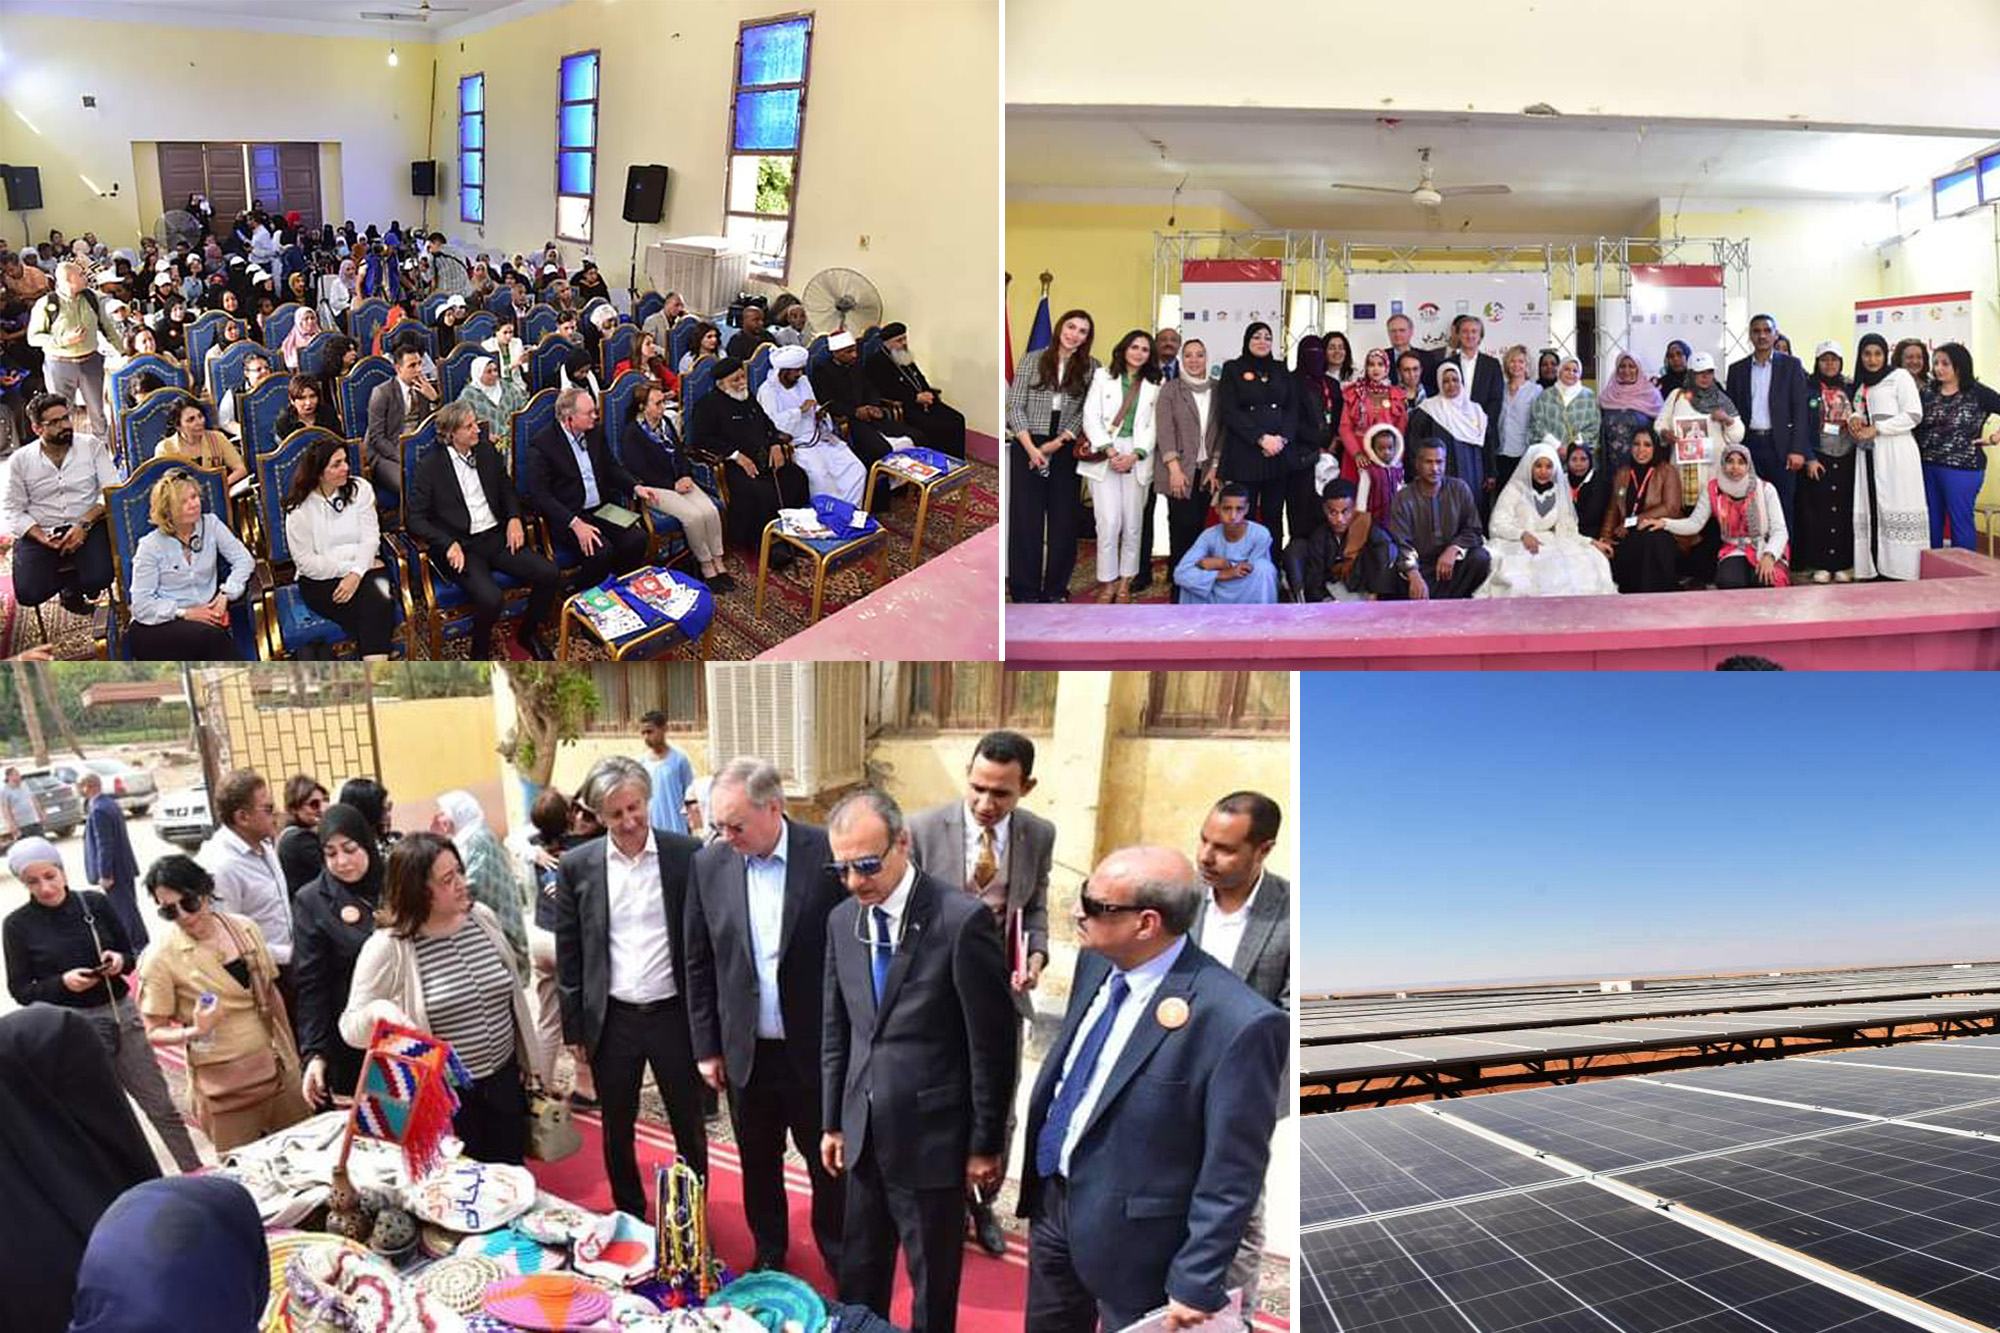 السيد إليساندرو فراسيتي، الممثل المقيم لبرنامج الأمم المتحدة الإنمائي في مصر، مع ممثل الاتحاد الأوروبي خلال زيارتهم لمشروع الطاقة الشمسية ومعرض الحرف اليدوية في بنبان بأسوان.